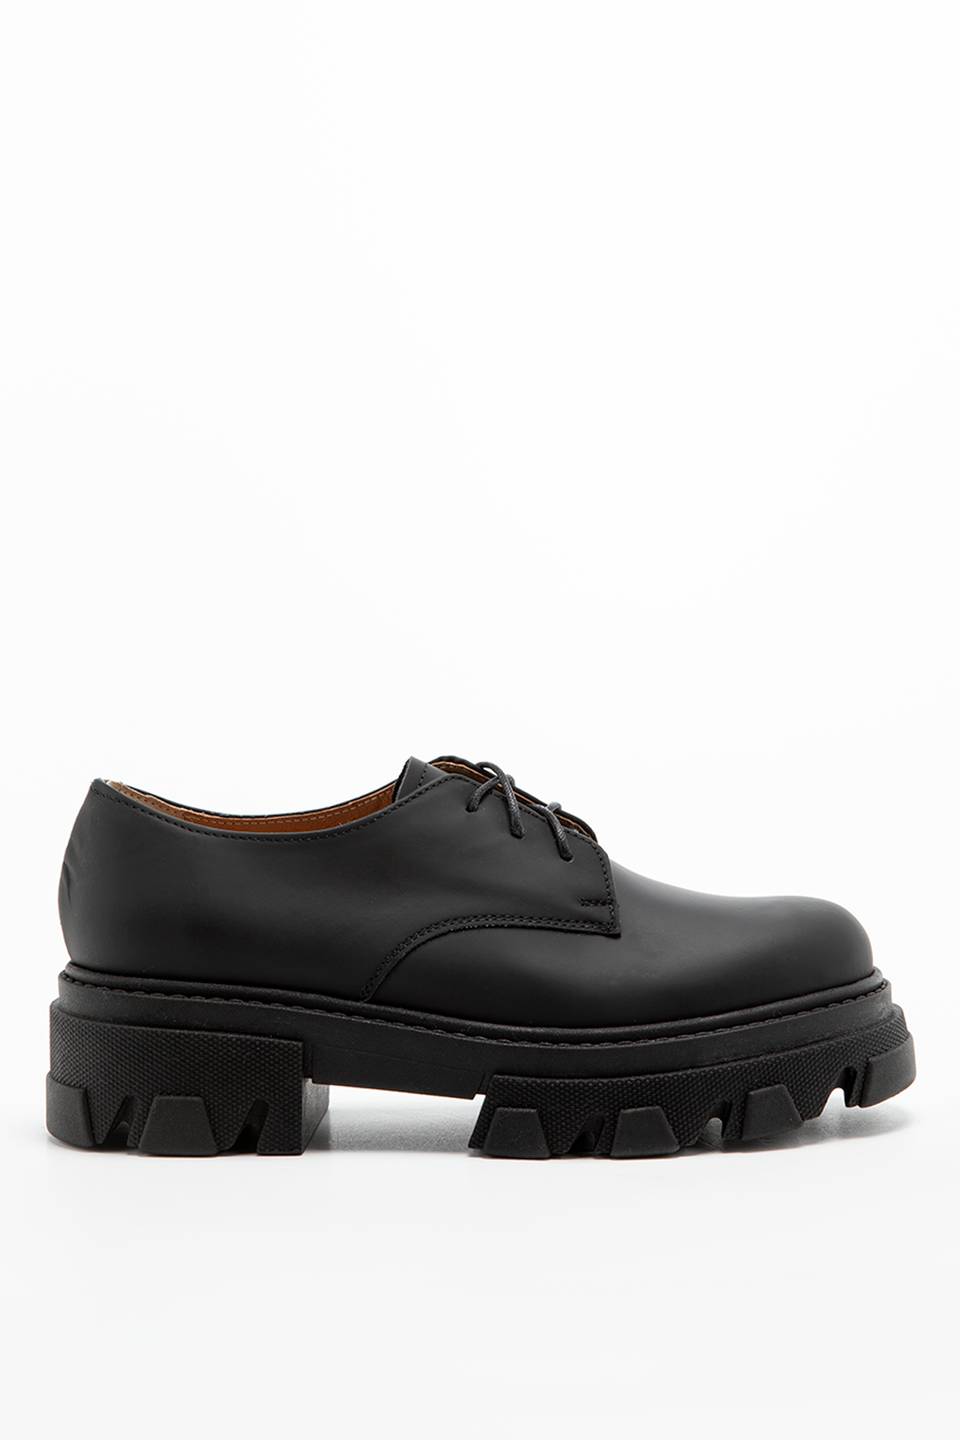 נעלי קז'ואל צ'ארלס פוטוויר לנשים Charles Footwear Mey Lace up - שחור